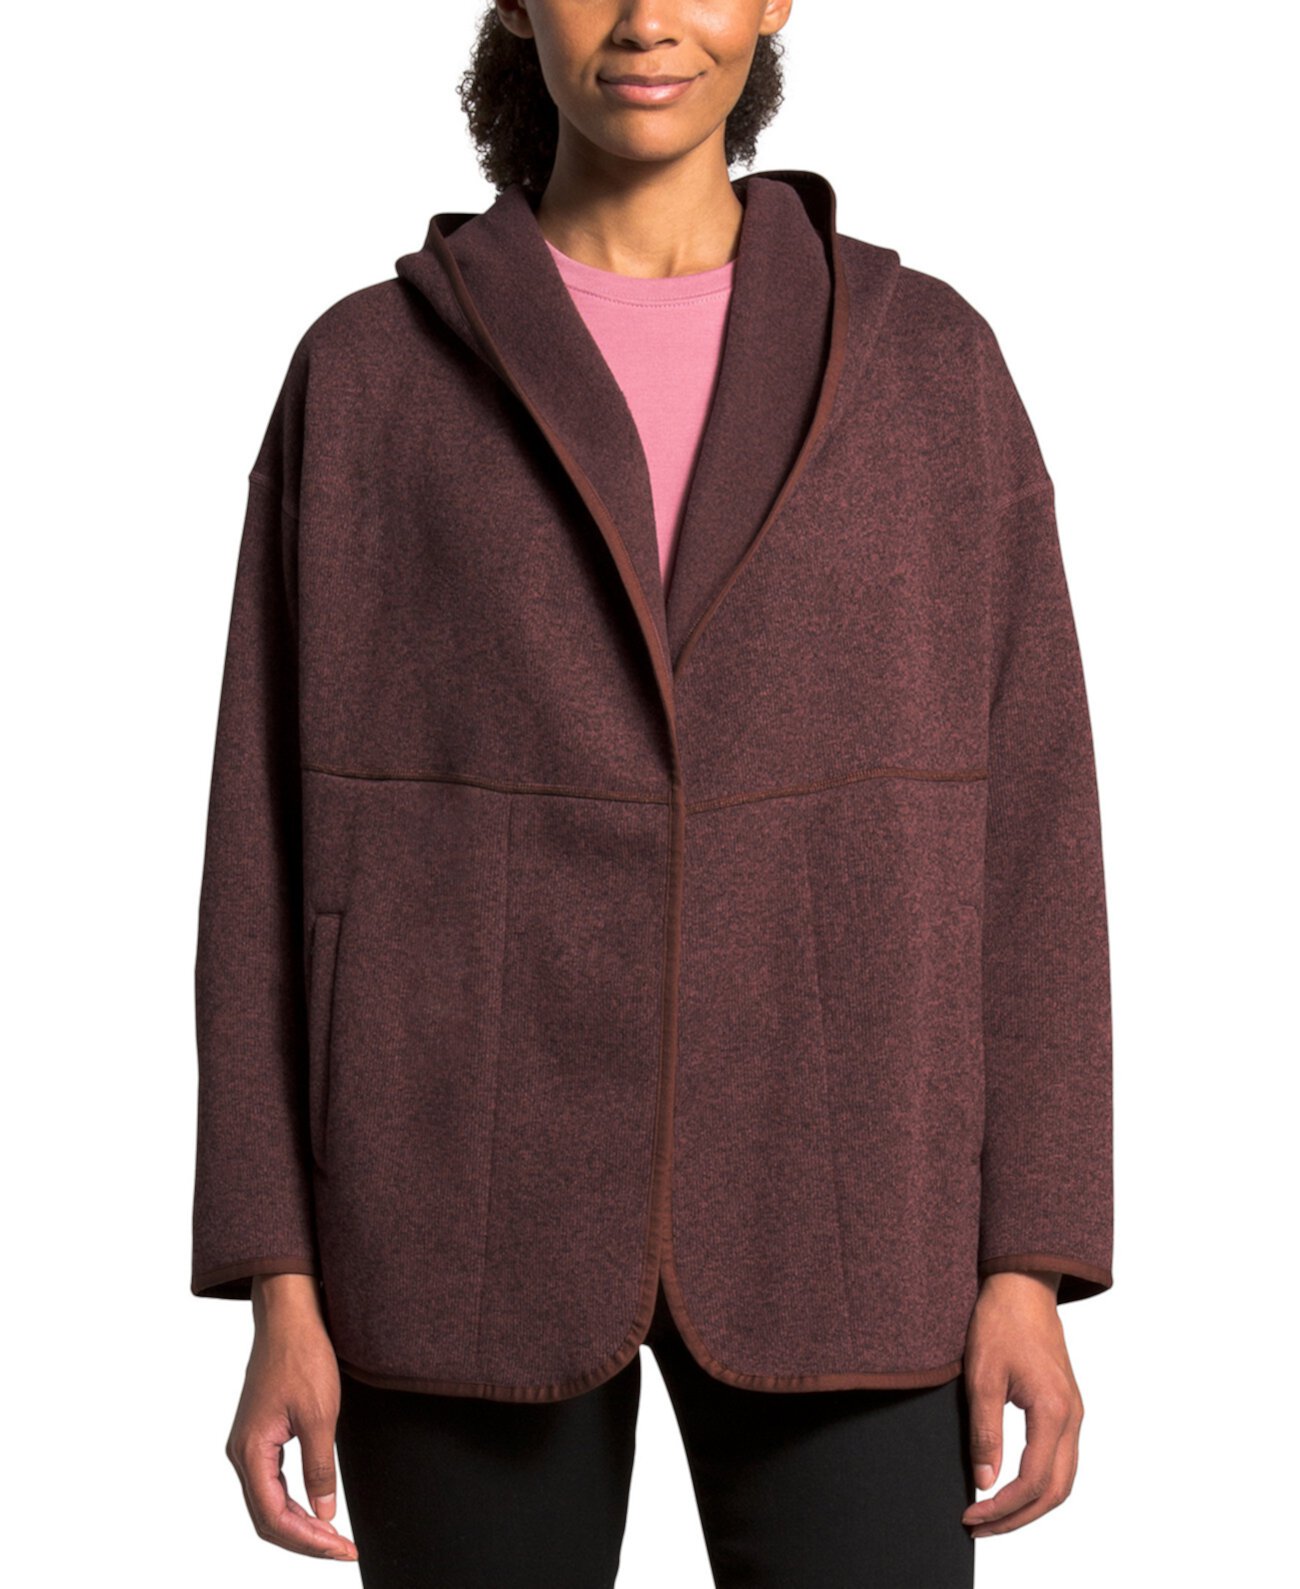 Женский свитер с капюшоном и запахом в форме полумесяца The North Face